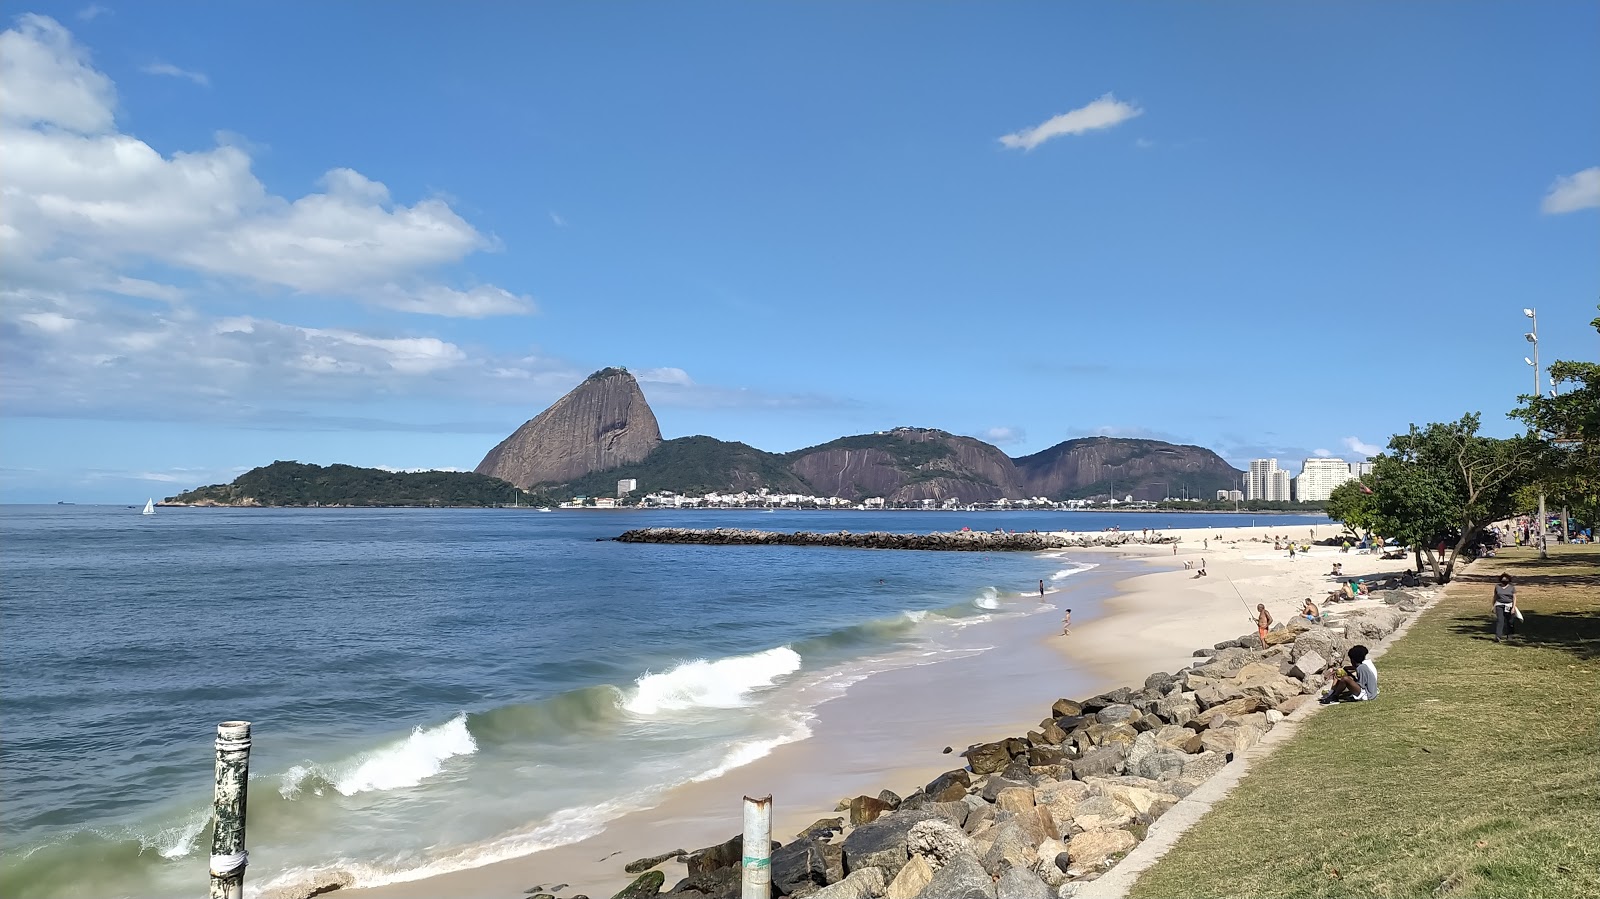 Foto af Praia do Flamengo - populært sted blandt afslapningskendere